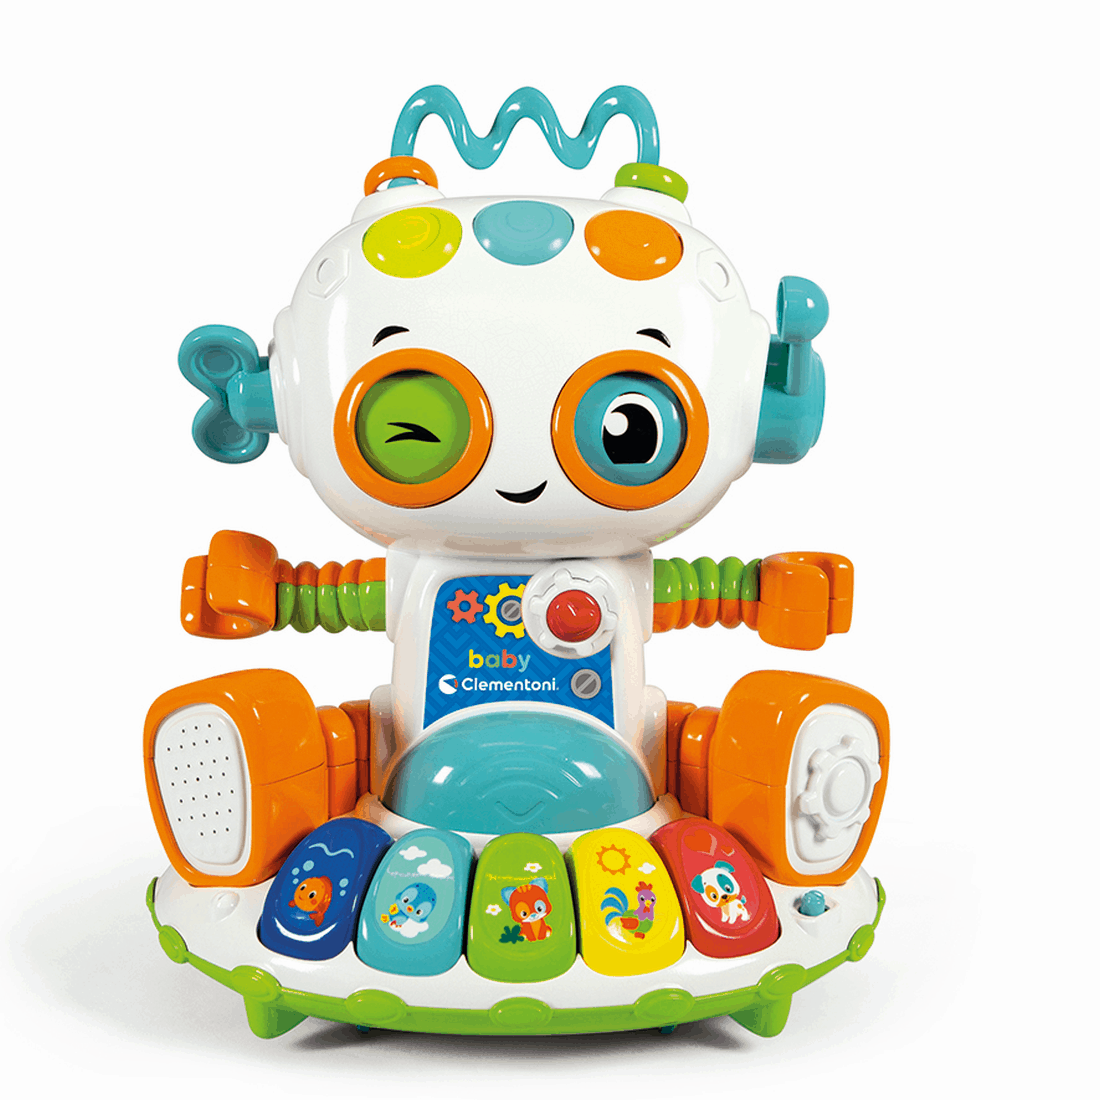 Βρεφικό Παιχνίδι - Baby Robot (Μιλάει Ελληνικά)